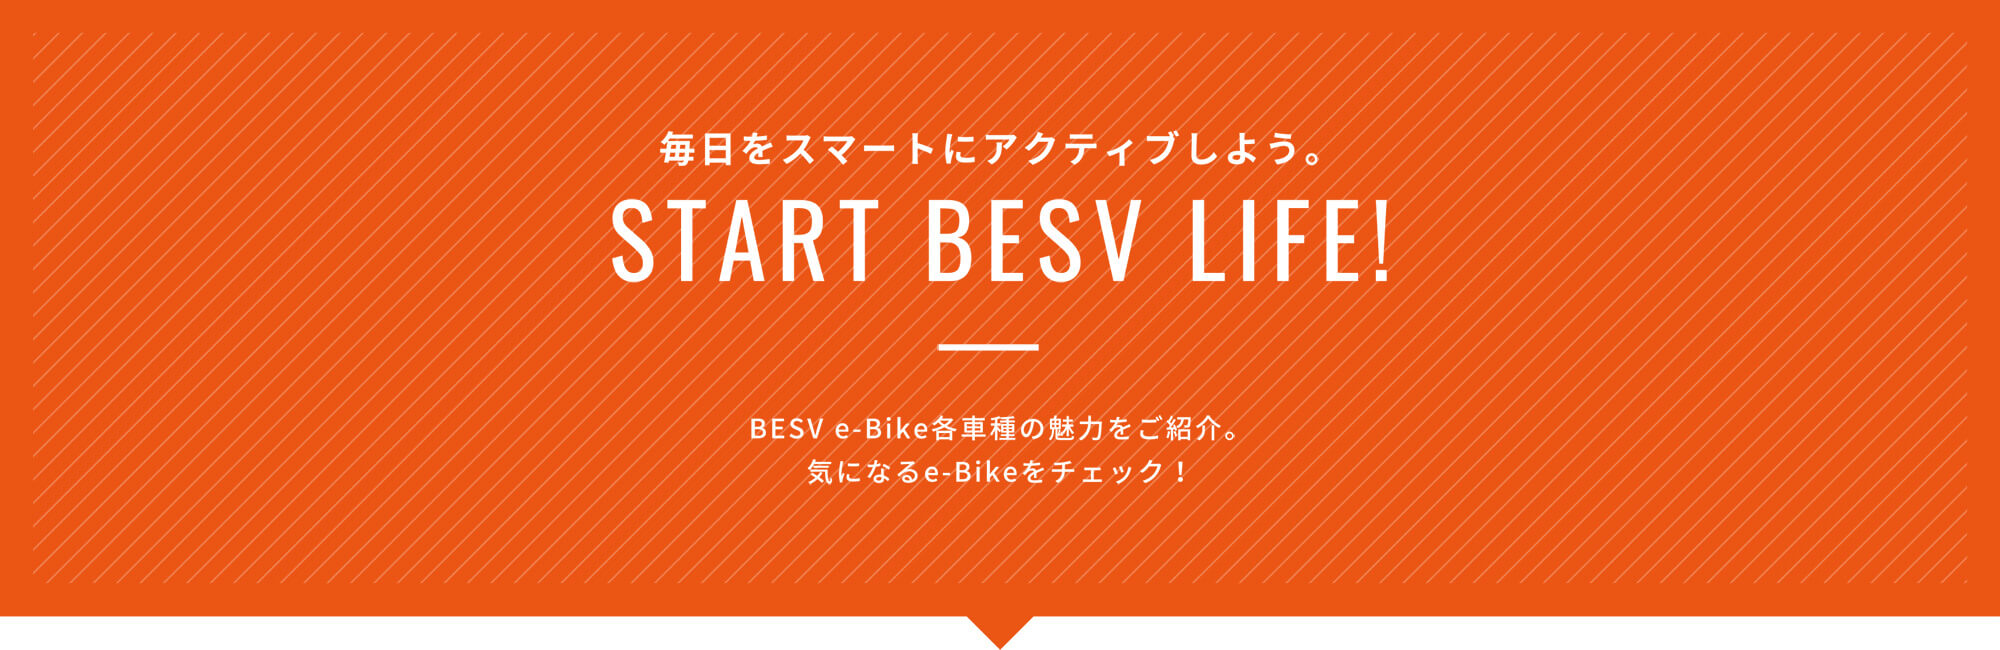 毎日をスマートにアクティブしよう。START BESV LIFE!